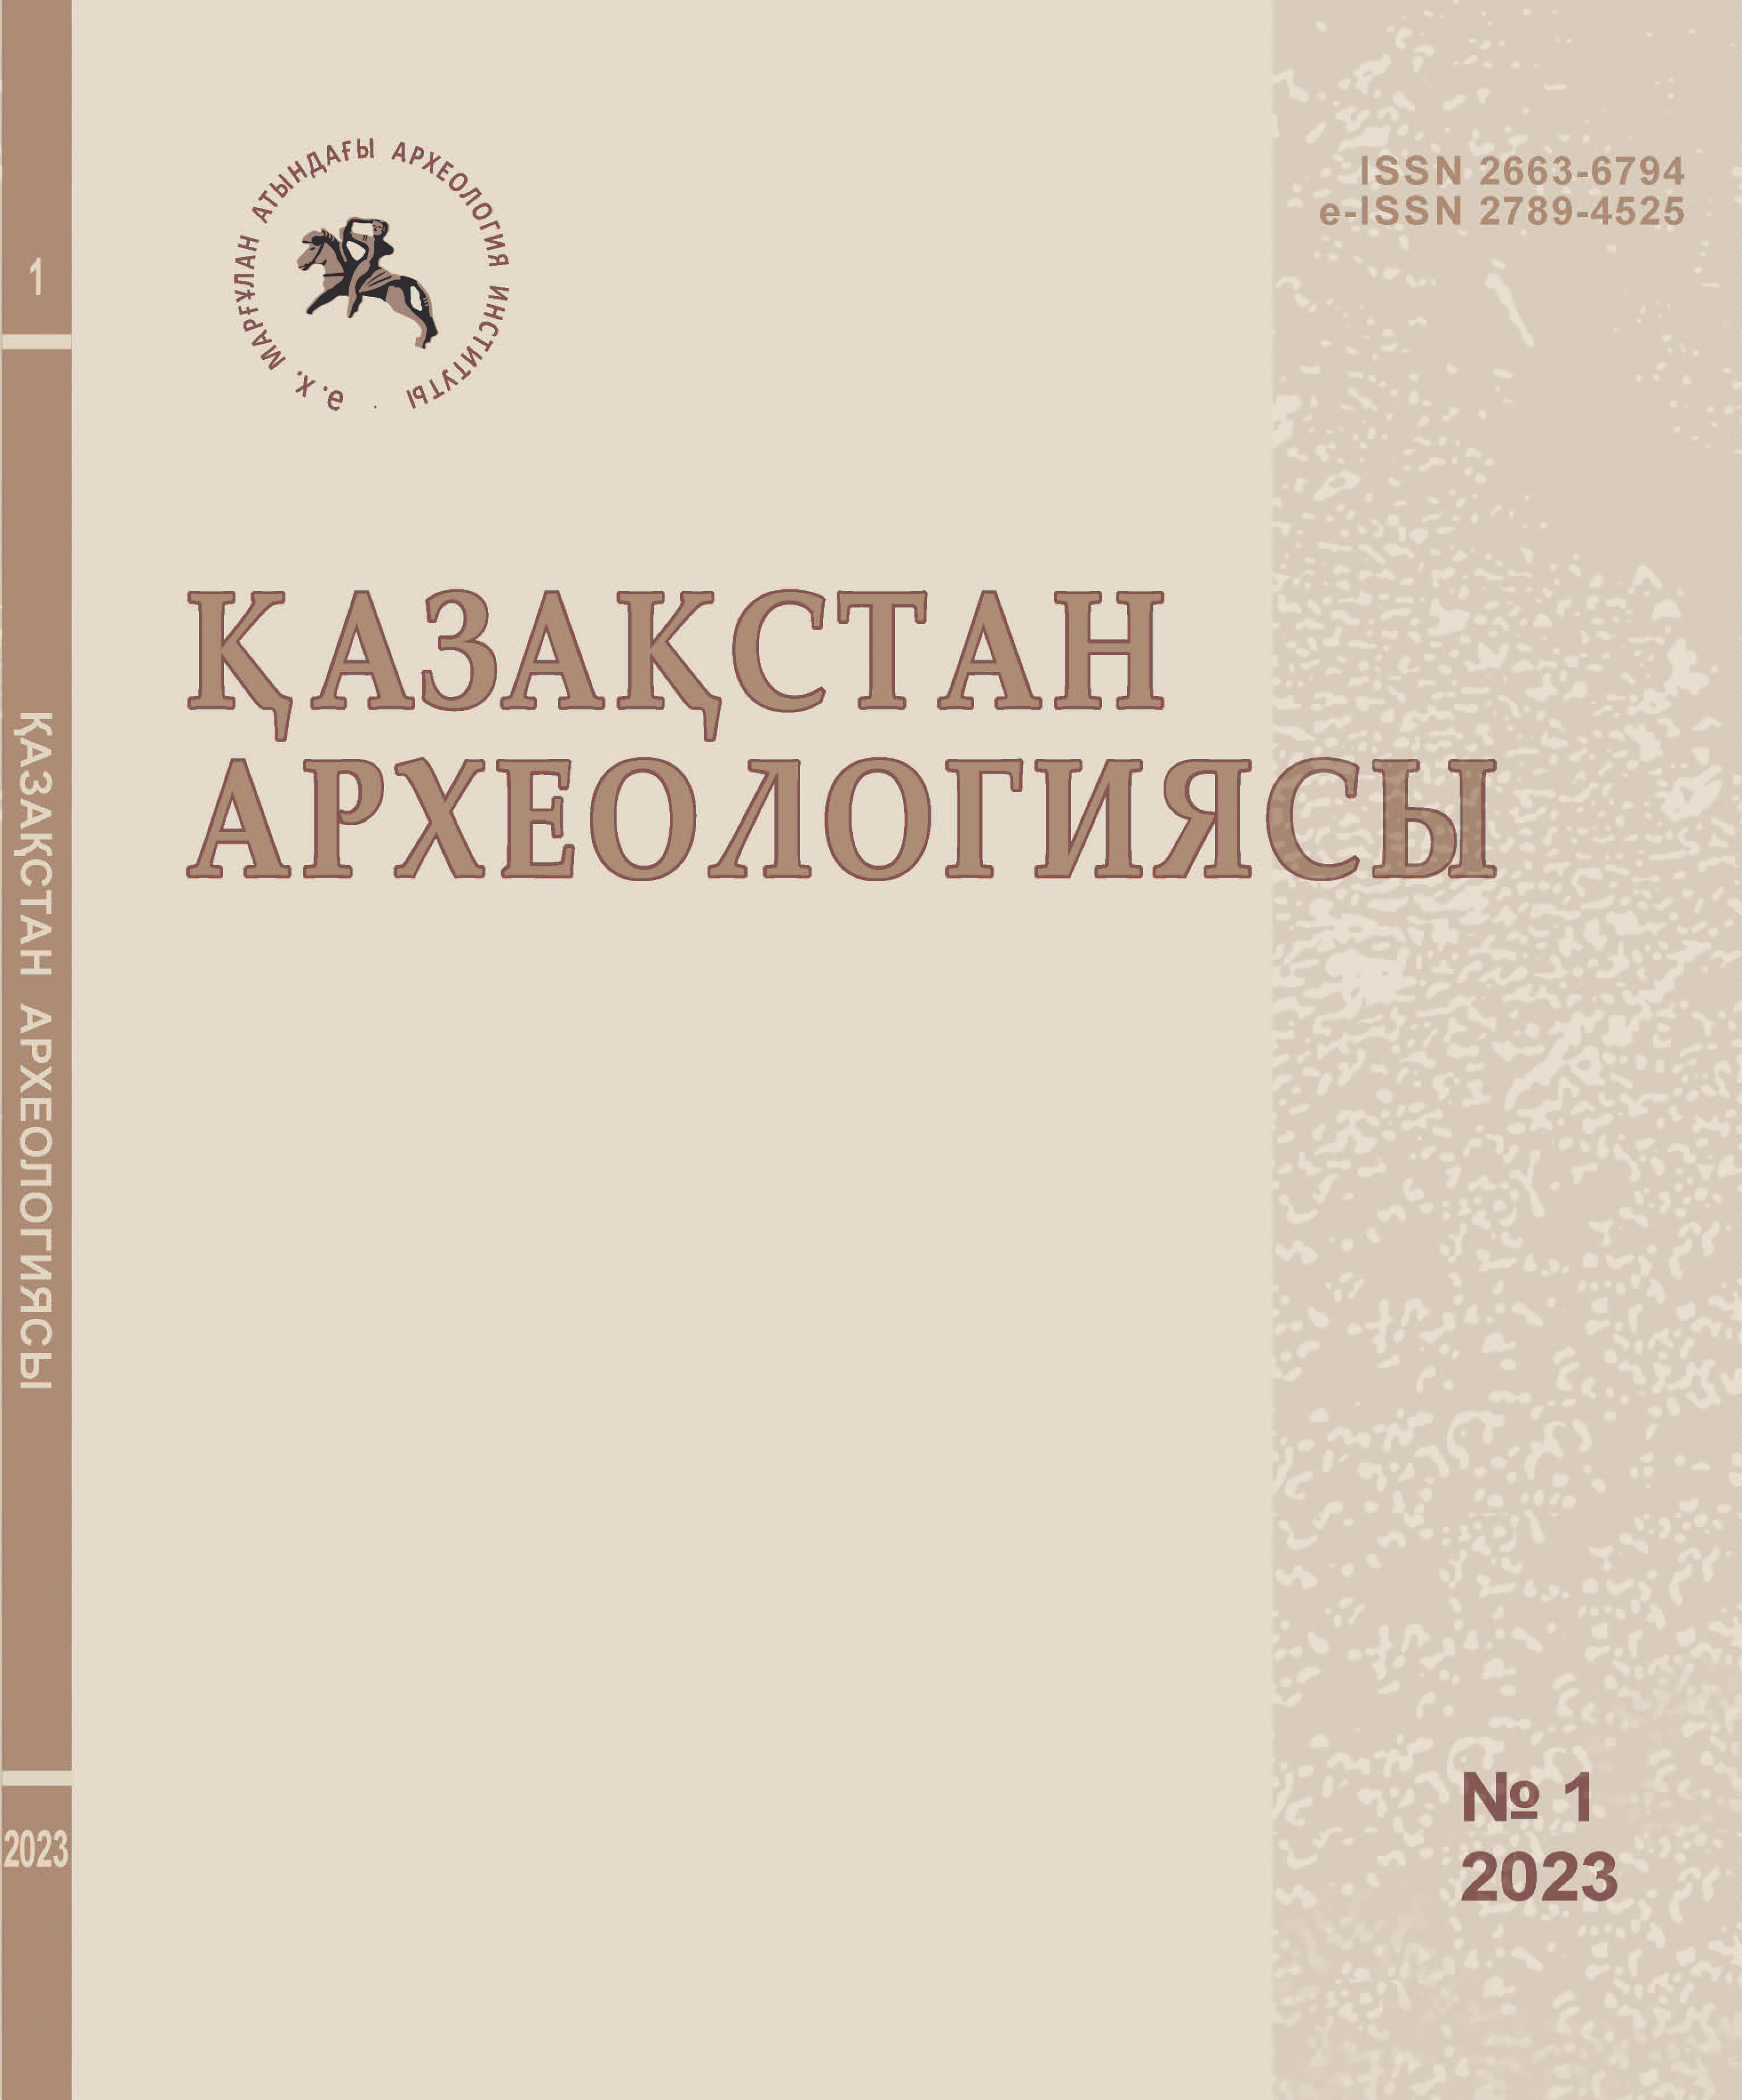 					Показать № 1 (19) (2023): Археология Казахстана
				